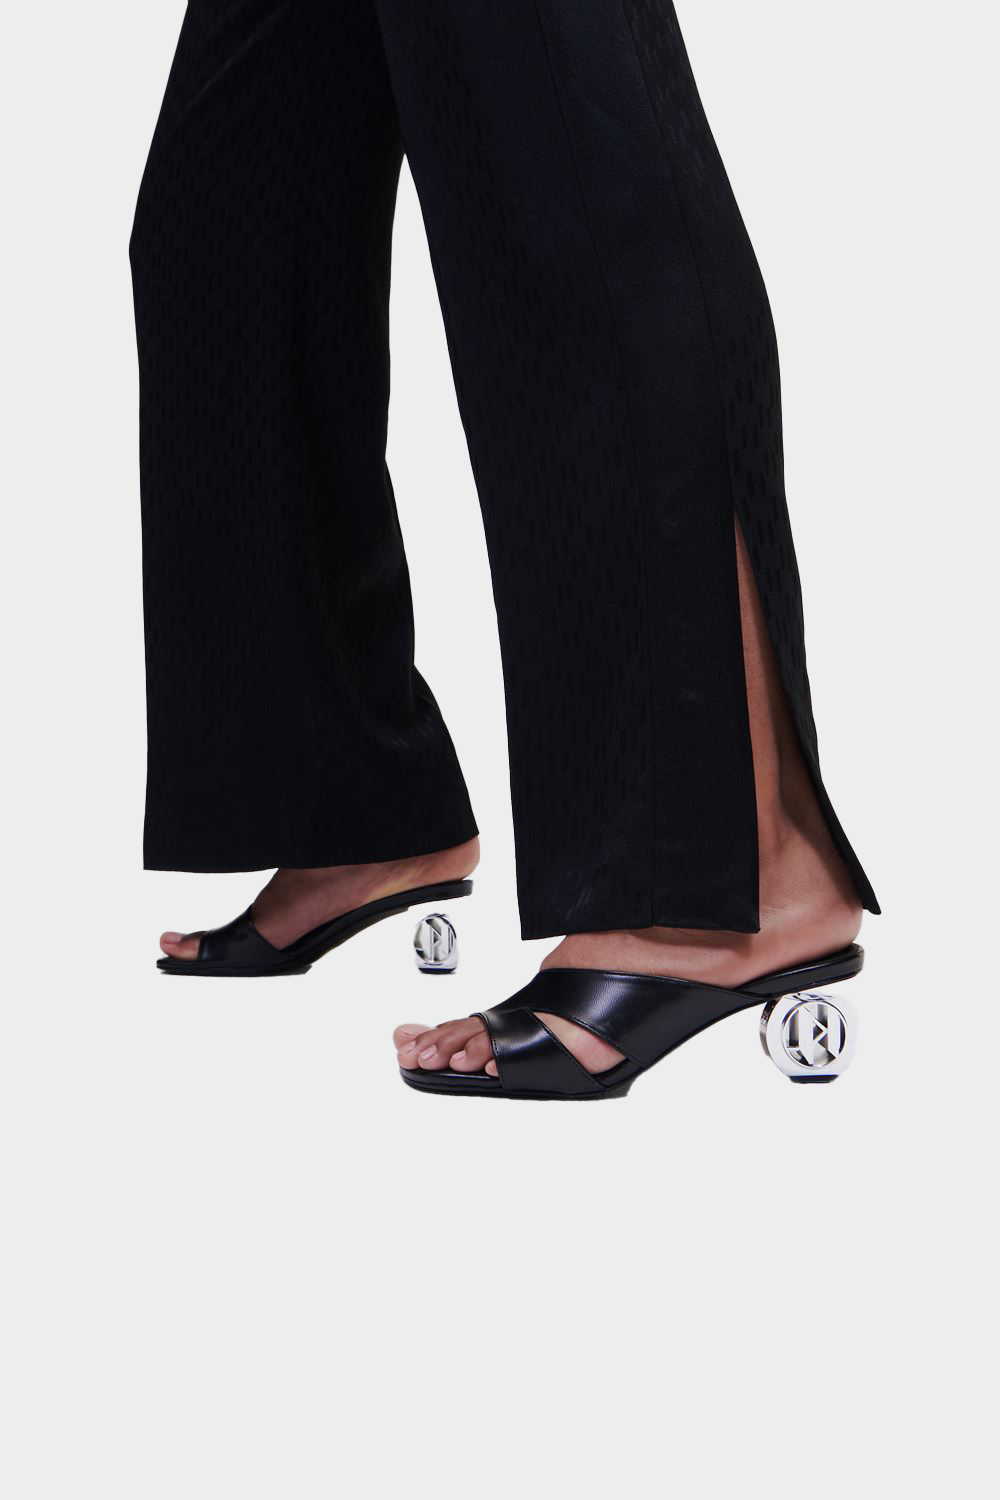 מכנסיים ארוכים לנשים פדלפון KARL LAGERFELD Vendome online | ונדום .